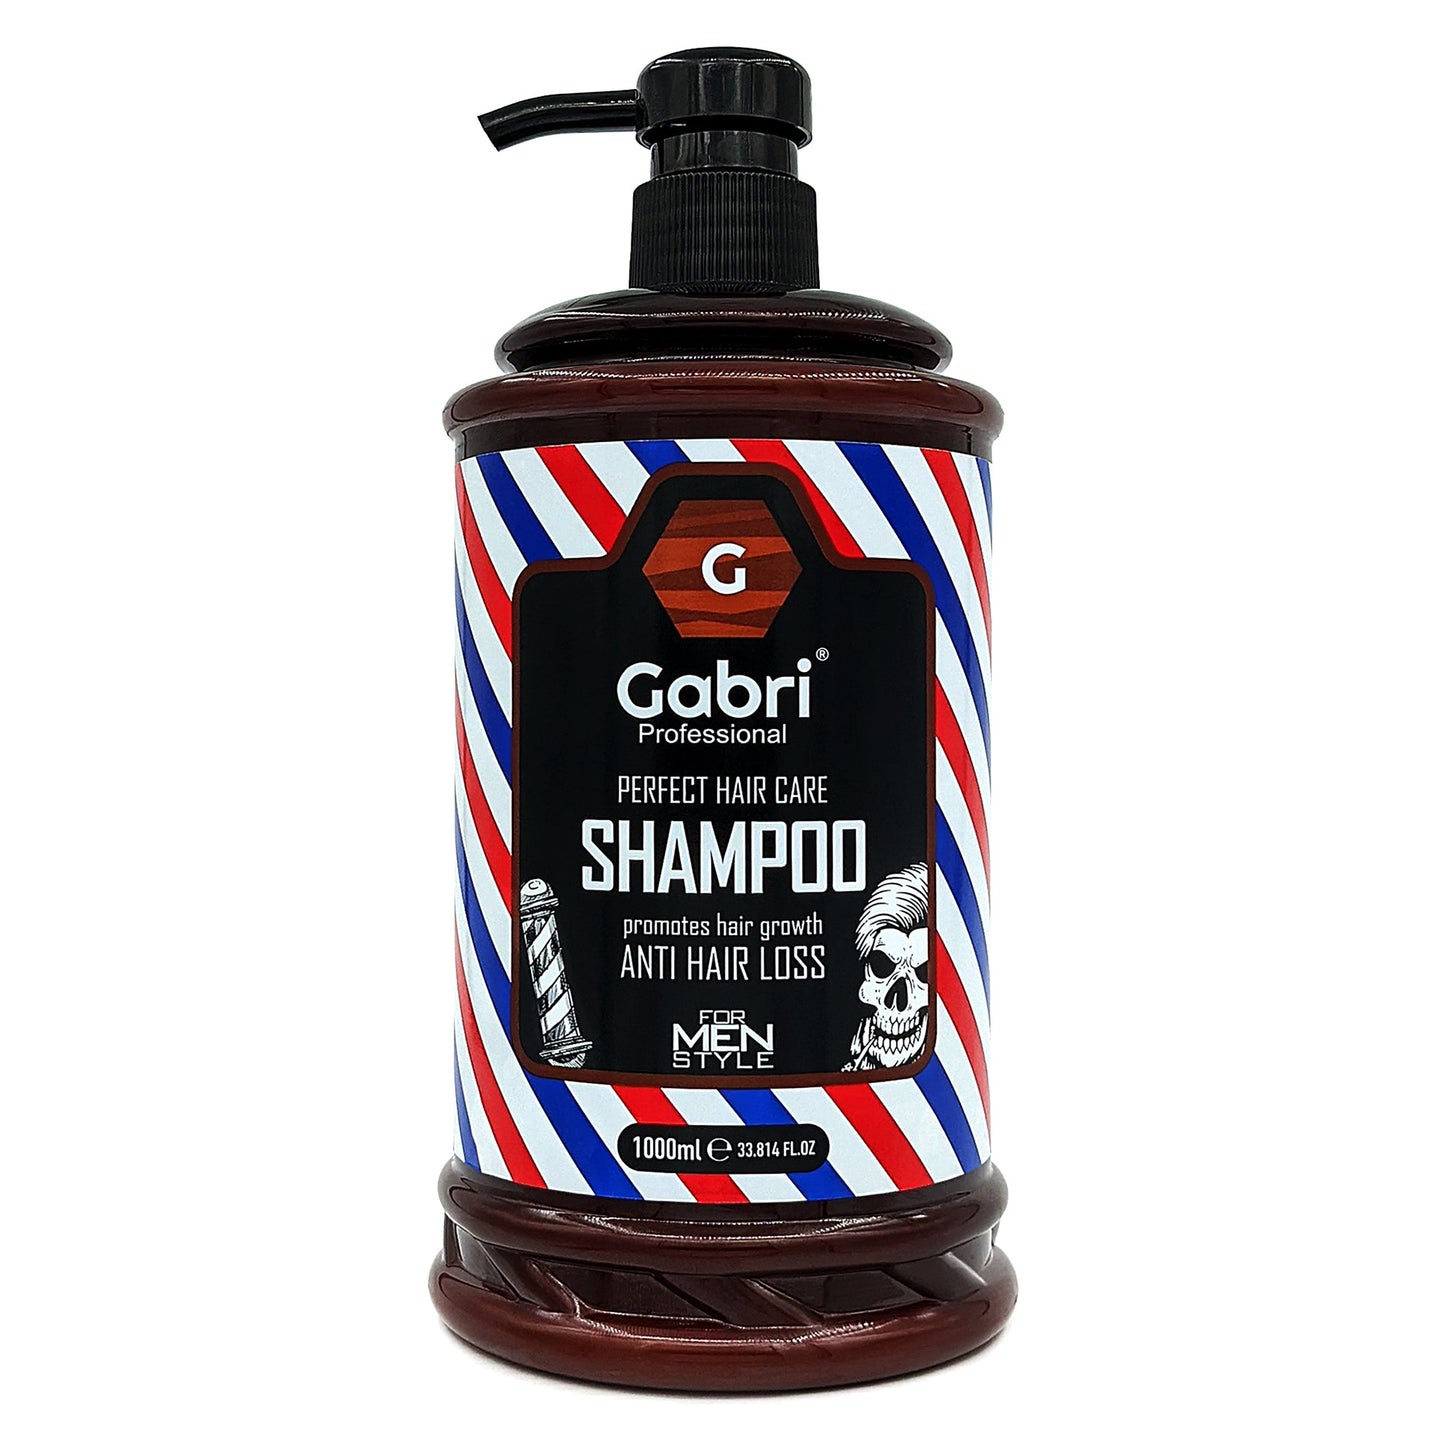 Gabri Professional Anti Hair Loss Perfect Hair Care Shampoo - 33.814FL.OZ